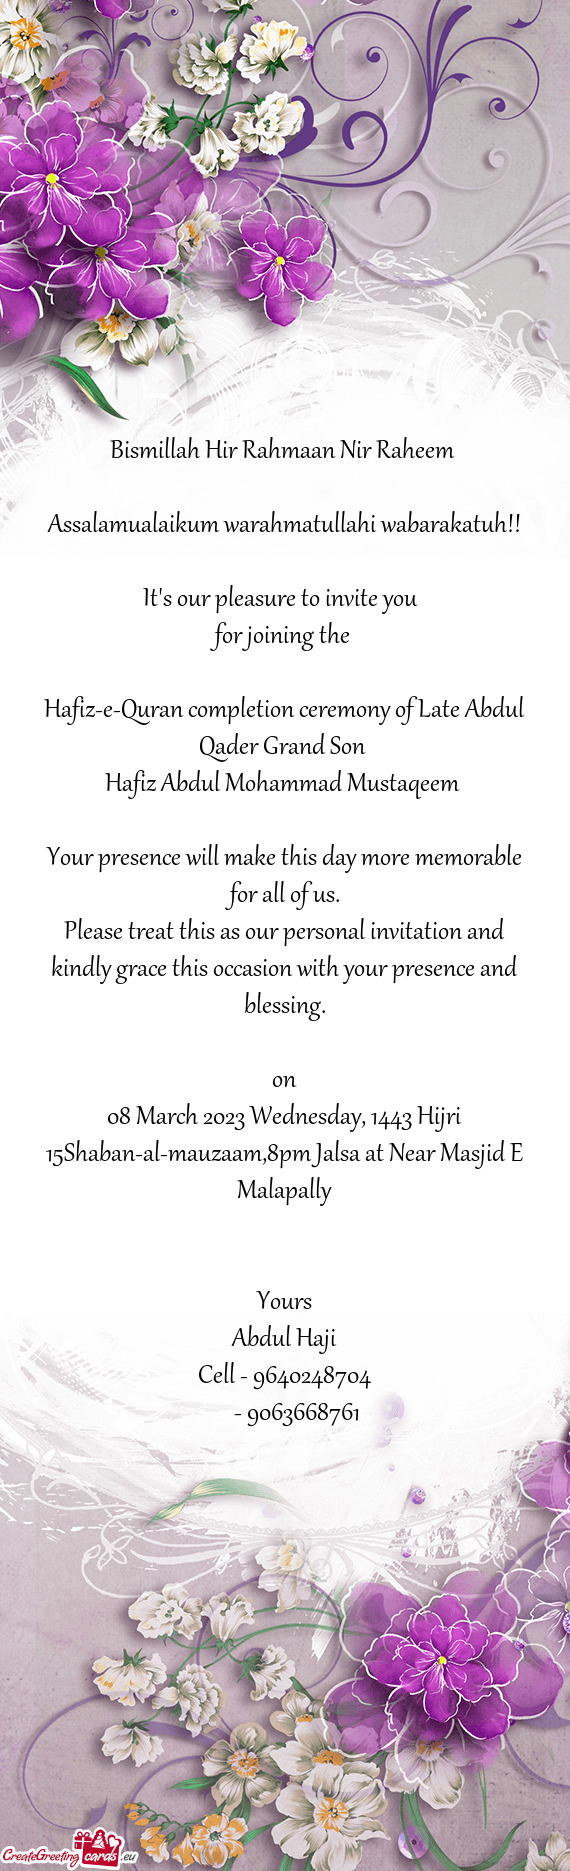 Hafiz-e-Quran completion ceremony of Late Abdul Qader Grand Son